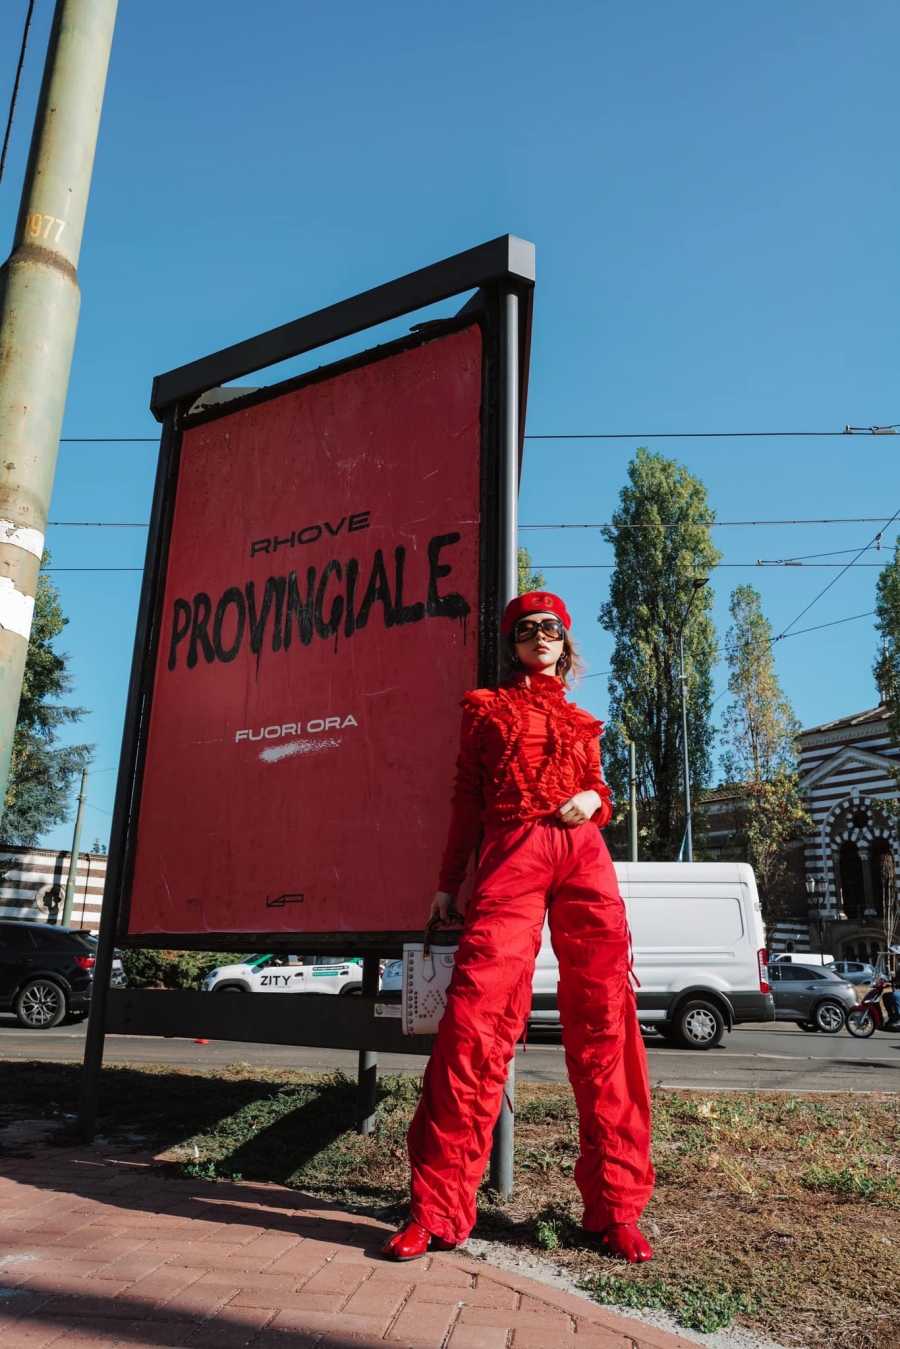 Chỉ xuất hiện trên đường phố Milan thôi nhưng Quỳnh Anh Shyn vẫn không ngừng 'cháy'. Cô diện trang phục xuyên suốt từ trên xuống dưới với mũ, quần áo và giày 'mũi heo' màu đỏ.